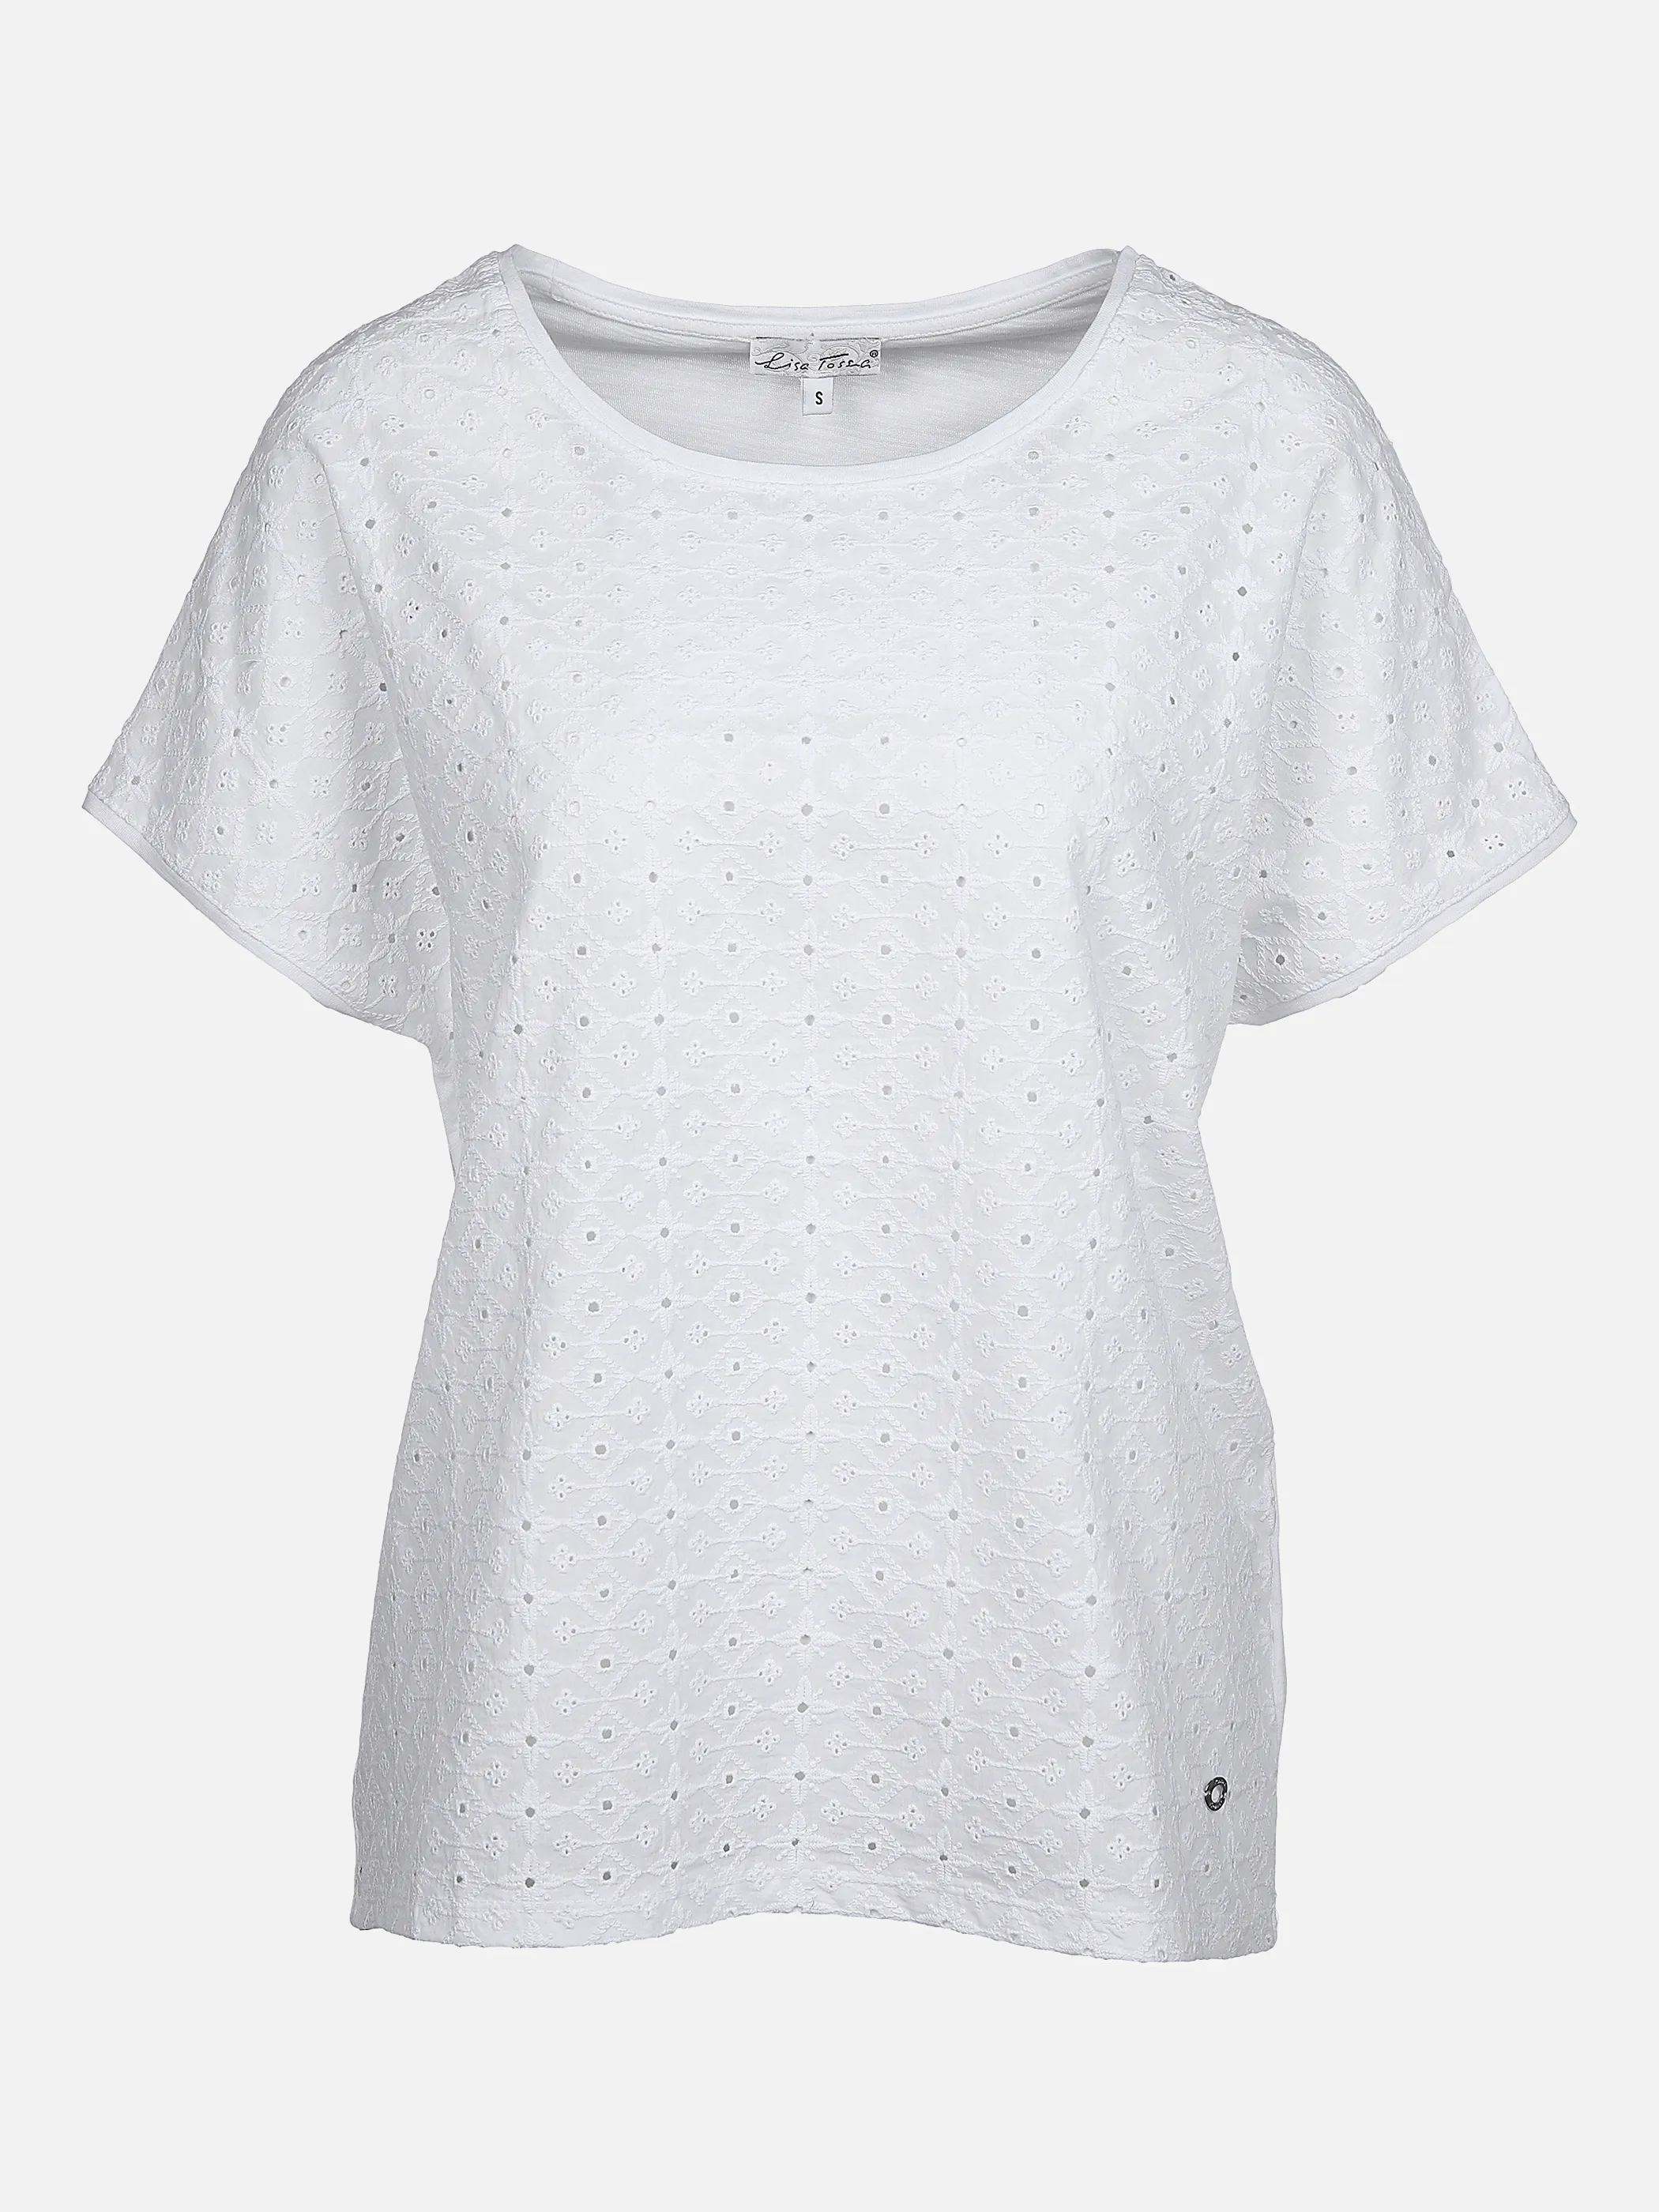 Lisa Tossa Da-Shirt m. übergroßer Schulte Weiß 862439 WEIß 1